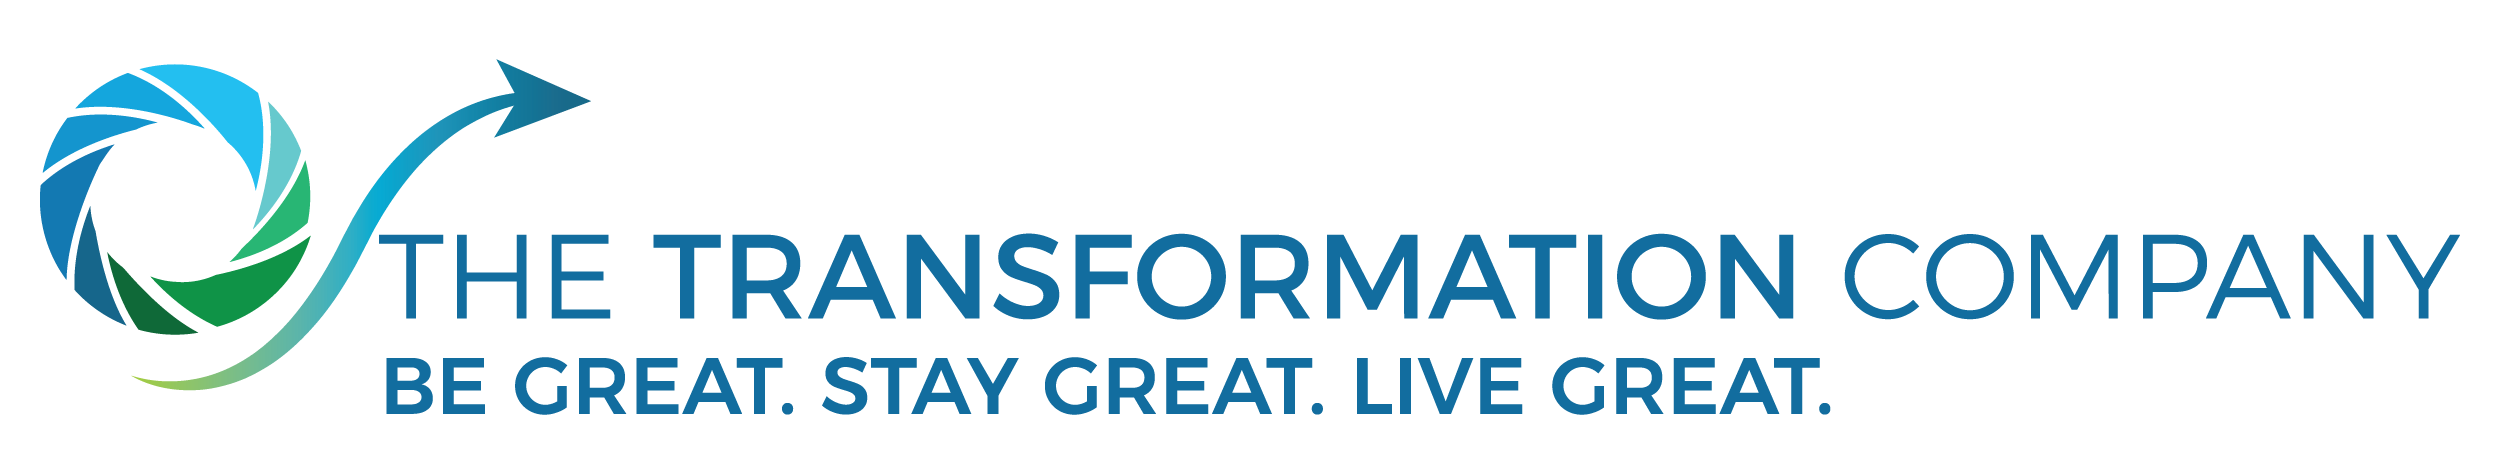 theTransformation.company logo